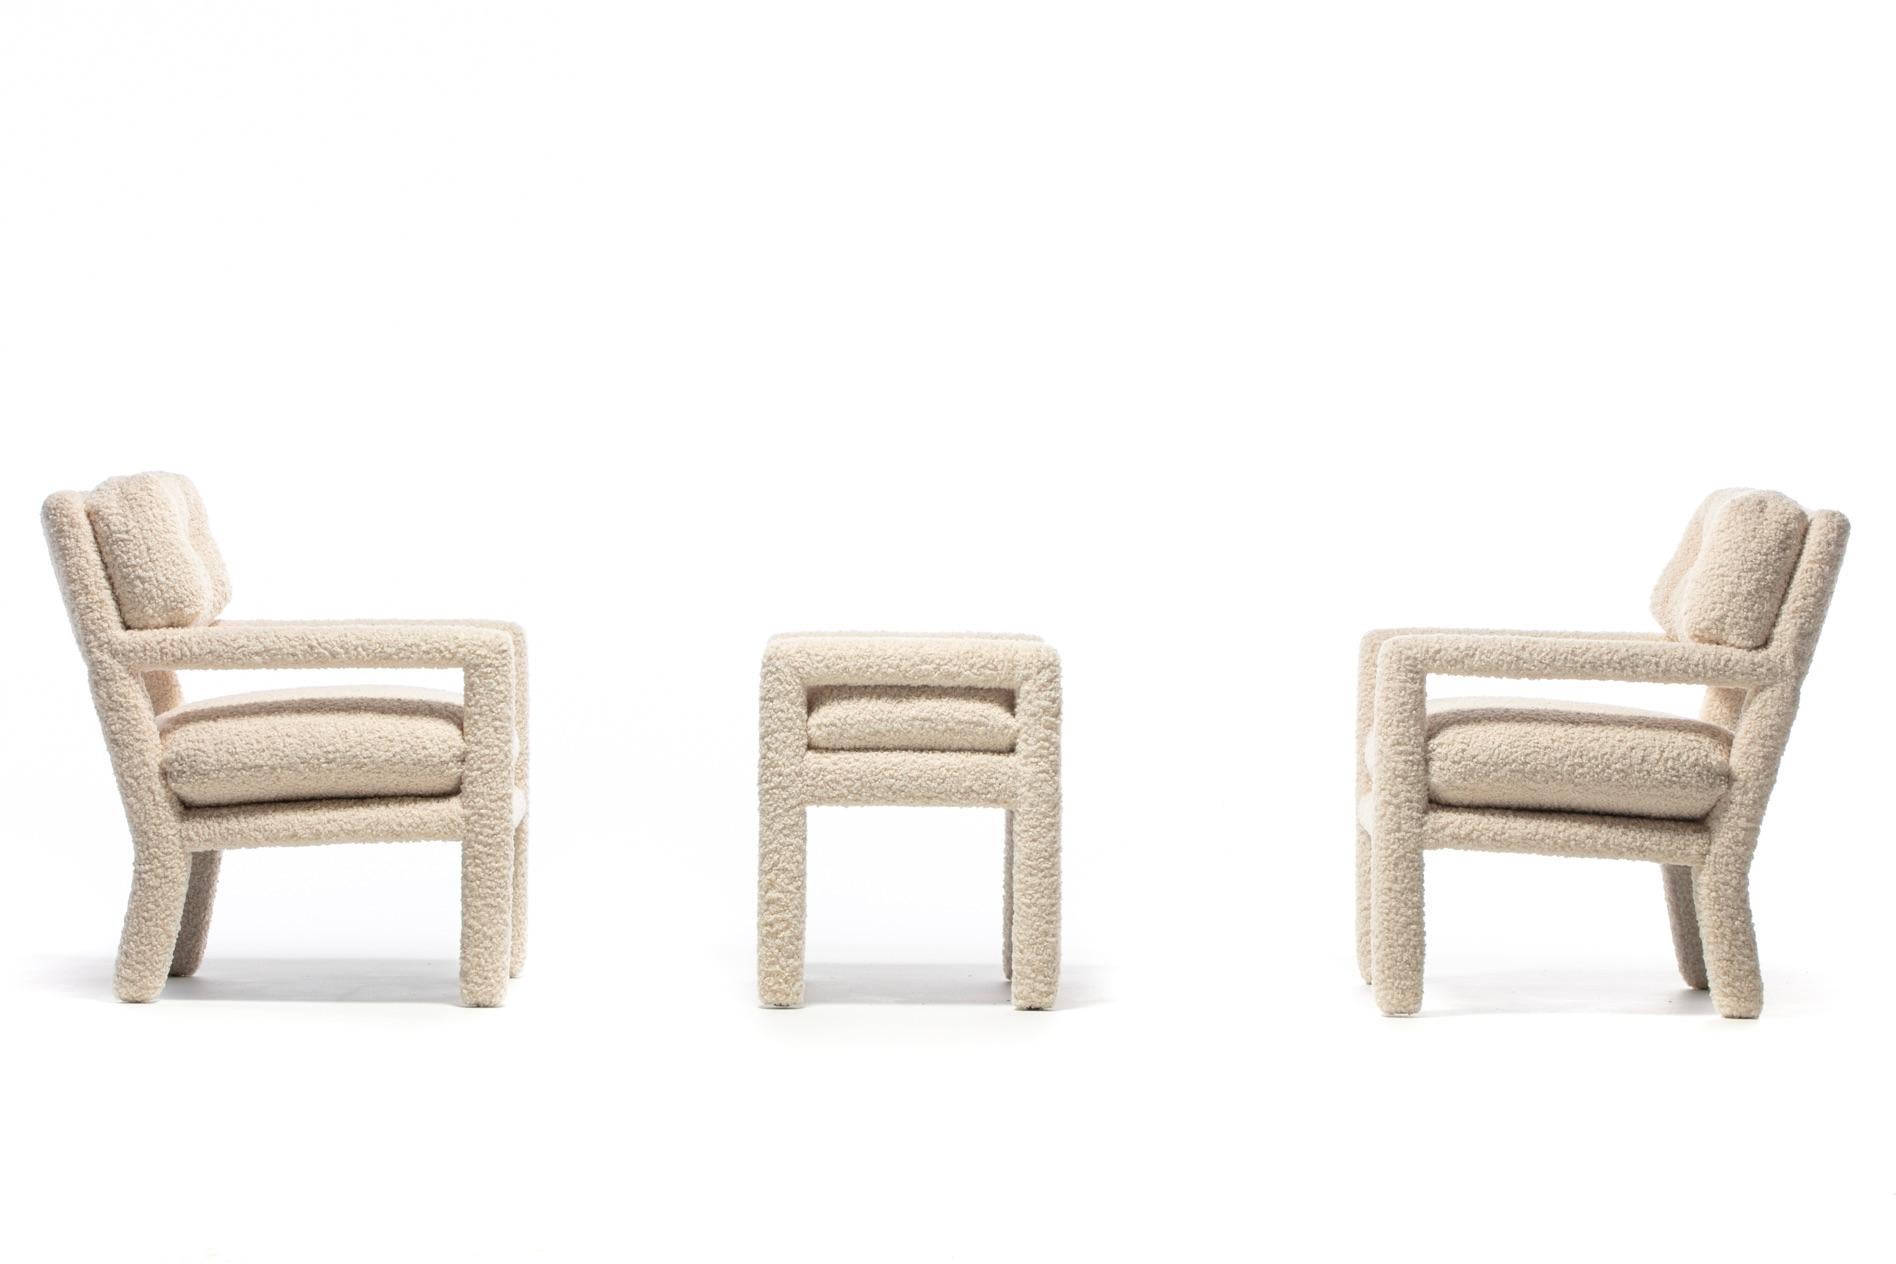 Milo Baughman Parsons Style Ivory Bouclé Chairs with en suite Ottoman c. 1970s  For Sale 12